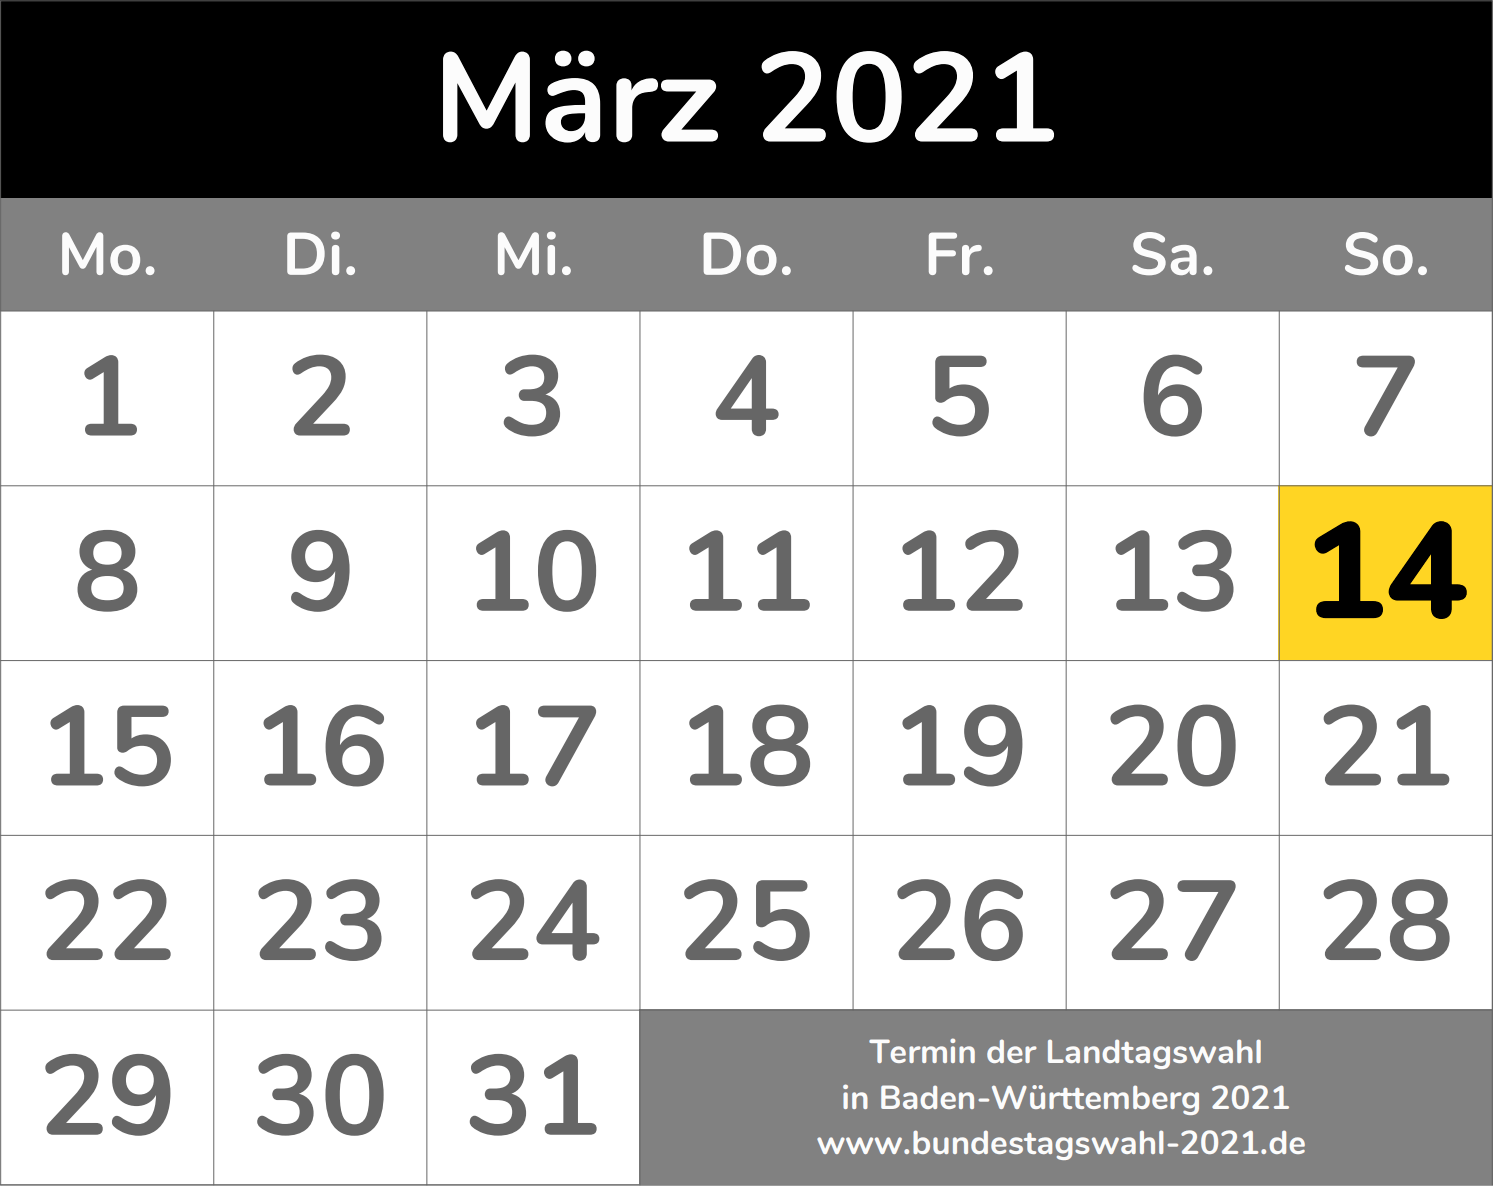 Wahltermin für die Landtagswahl in Baden-Württemberg 2021